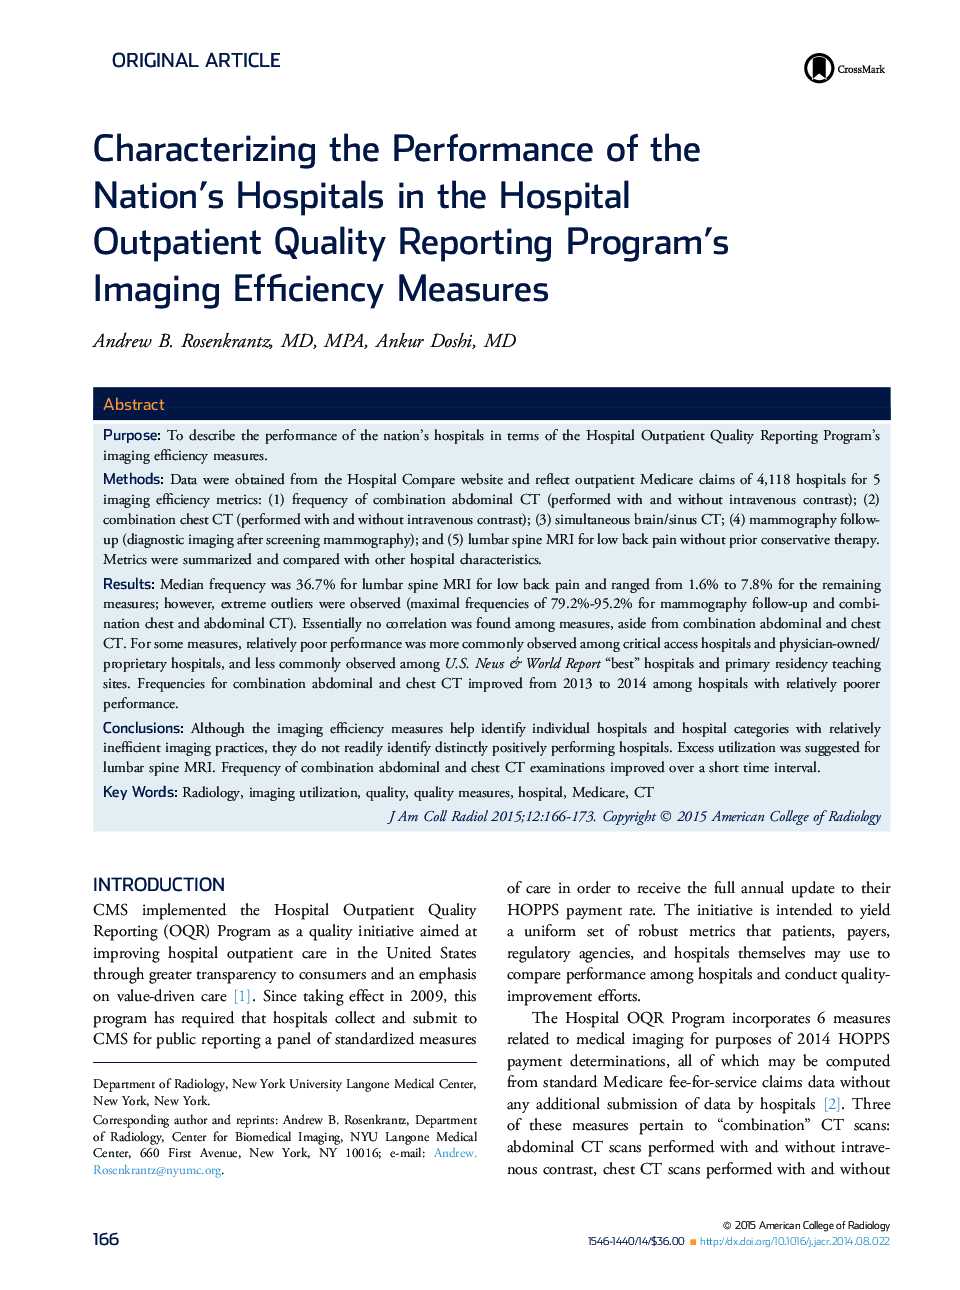 مشخص کردن عملکرد بیمارستان های کشور در اقدامات تصویربرداری برنامه های گزارش کیفیت بیمارستان 